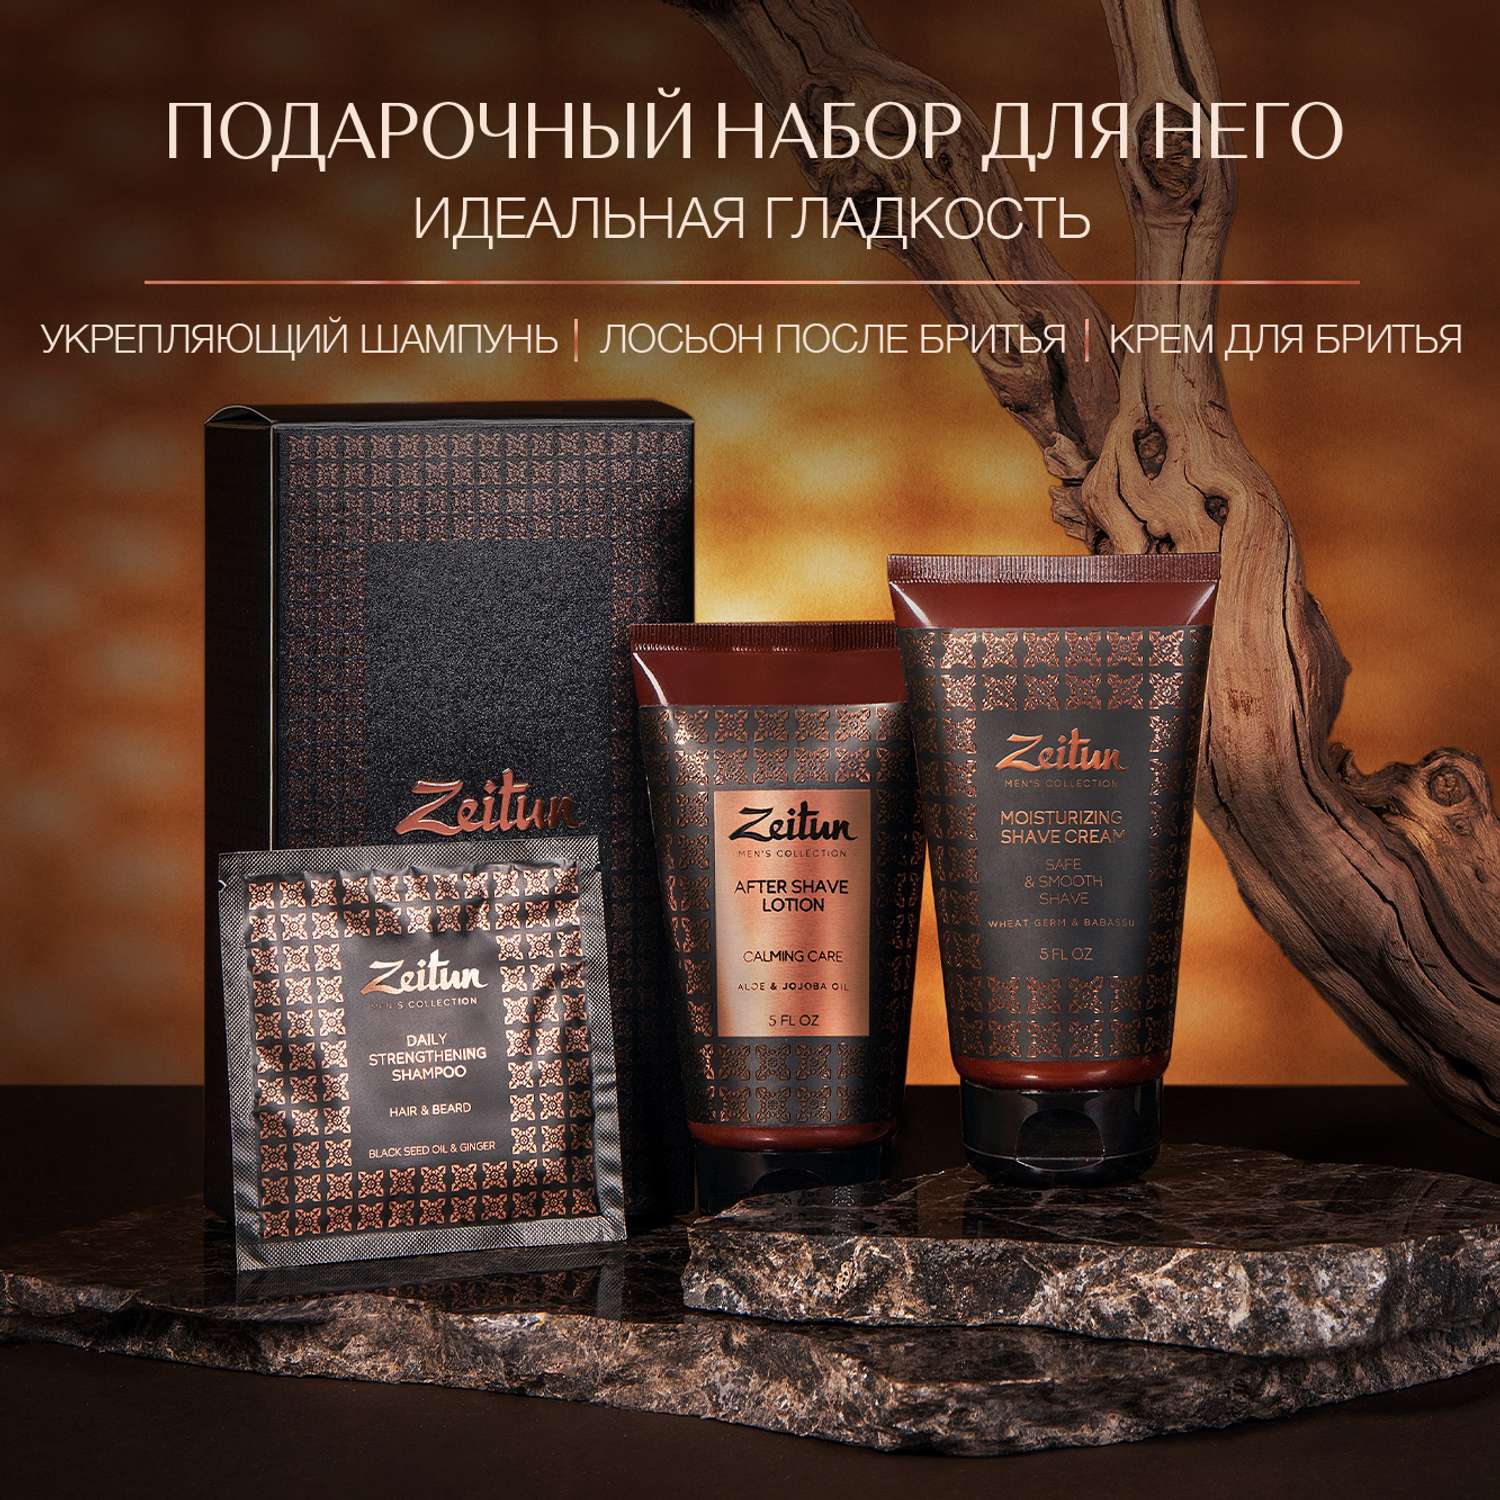 Подарочный набор Zeitun для мужчин Идеальная гладкость крем для бритья лосьон после бритья шампунь - фото 7